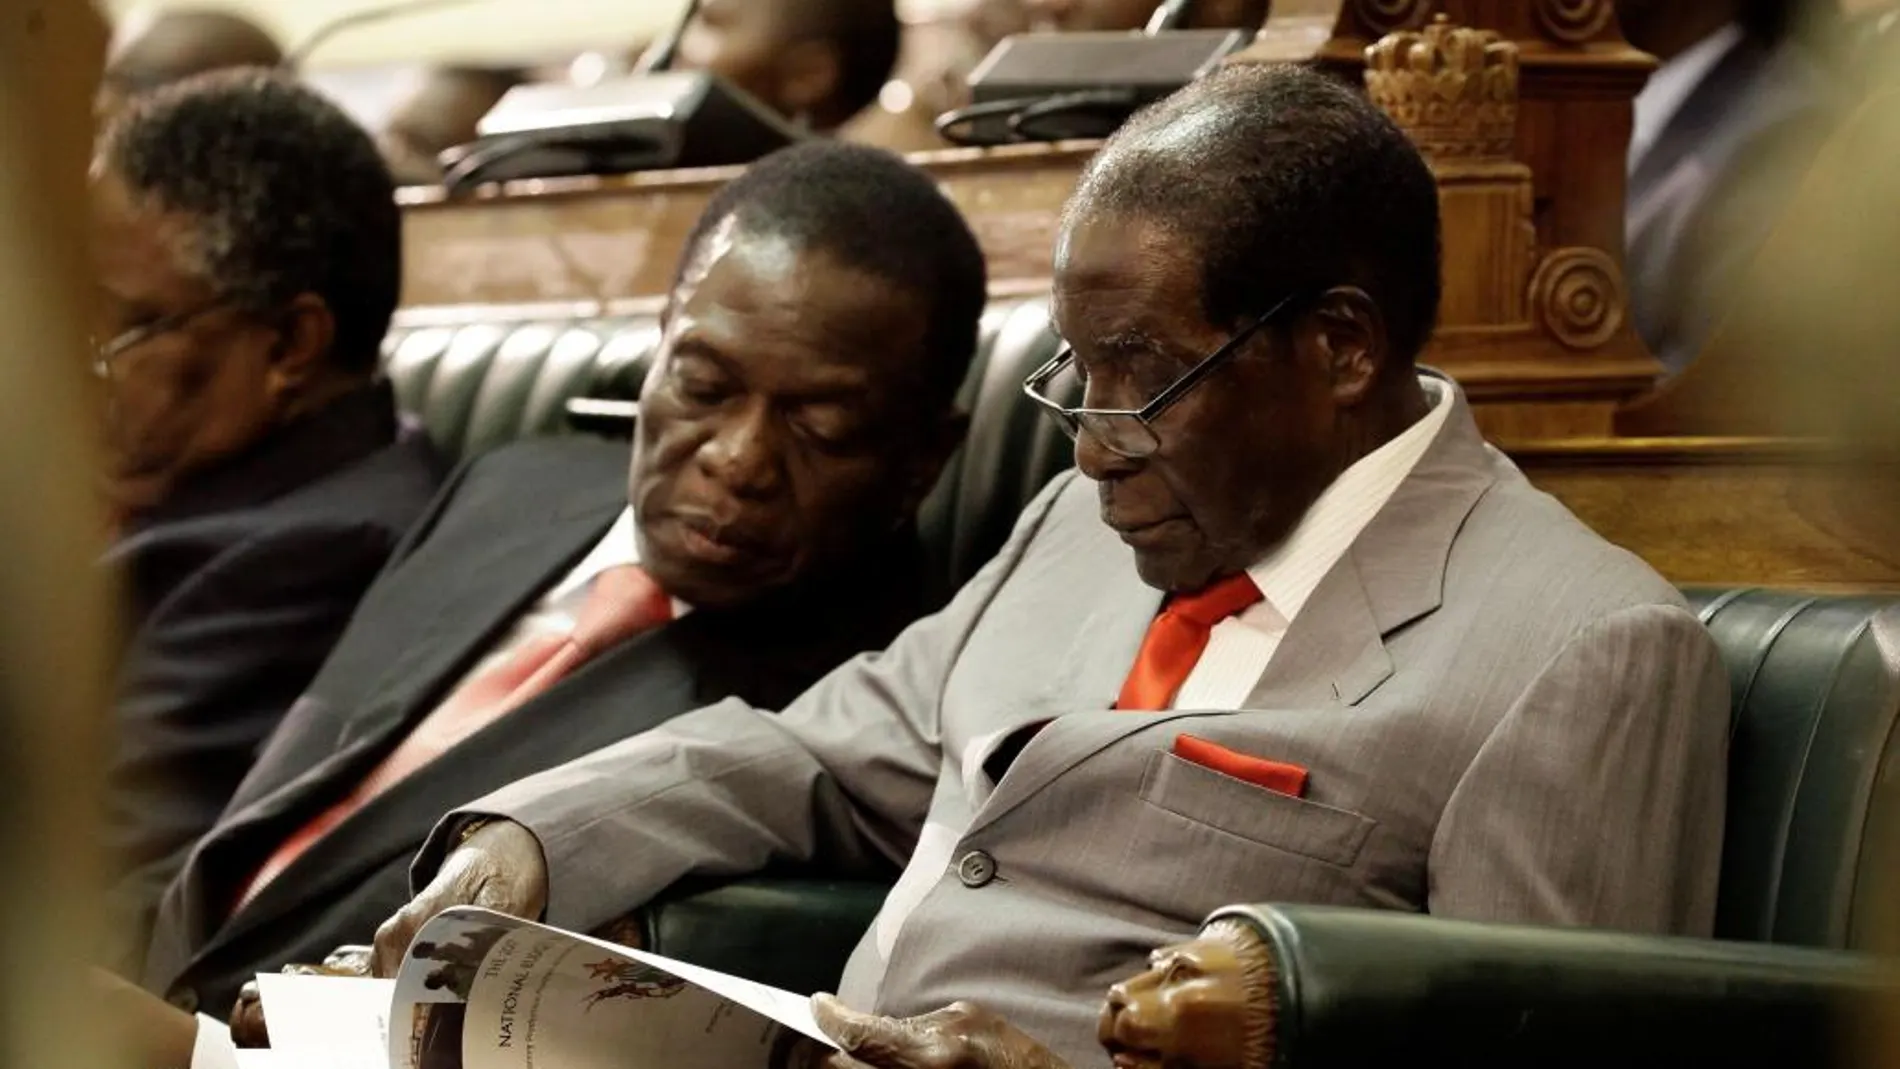 Foto de archivo del presidente de Zimbabue, Robert Mugabe (dcha), y del vicepresidente del país, Emmerson Mnangagwa, mientras ojean una copia de los presupuestos generales del país para 2017 en el Parlamento, en Harare (Zimbabue) el 8 de diciembre de 2016